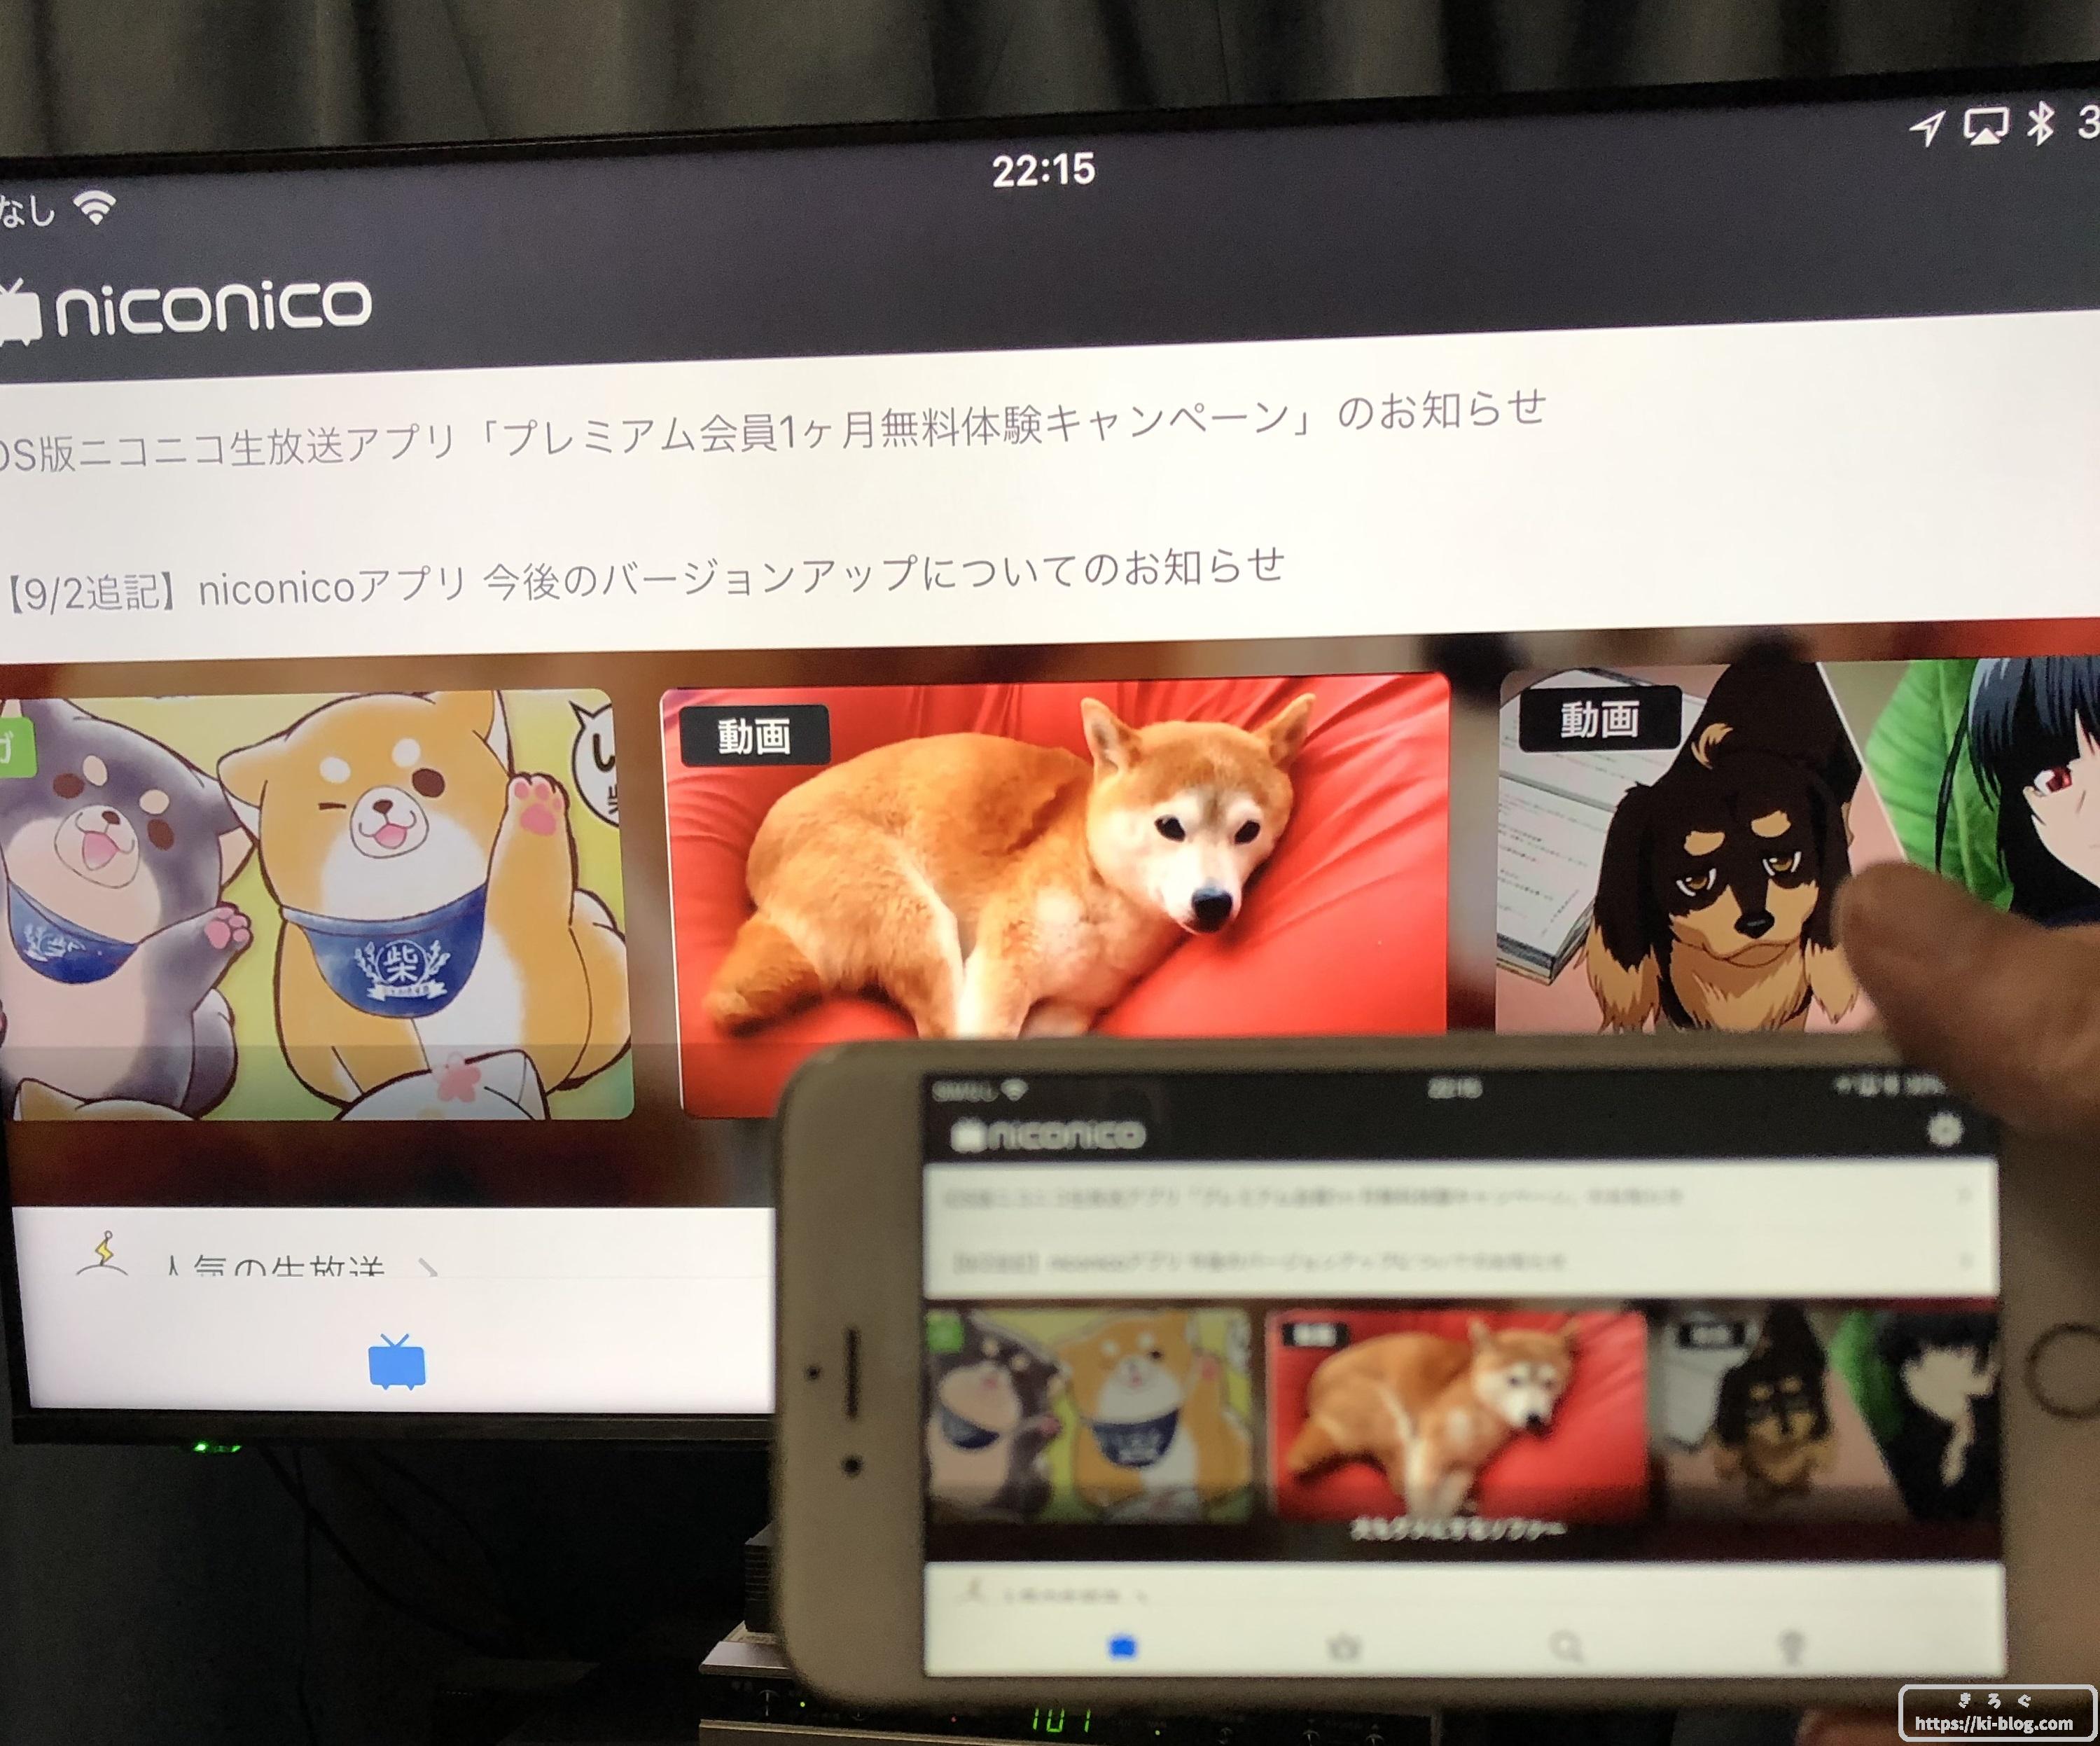 Fire Tv Stickでニコニコ動画を見る方法 Niconicoアプリサービス終了後対応版 きろぐ